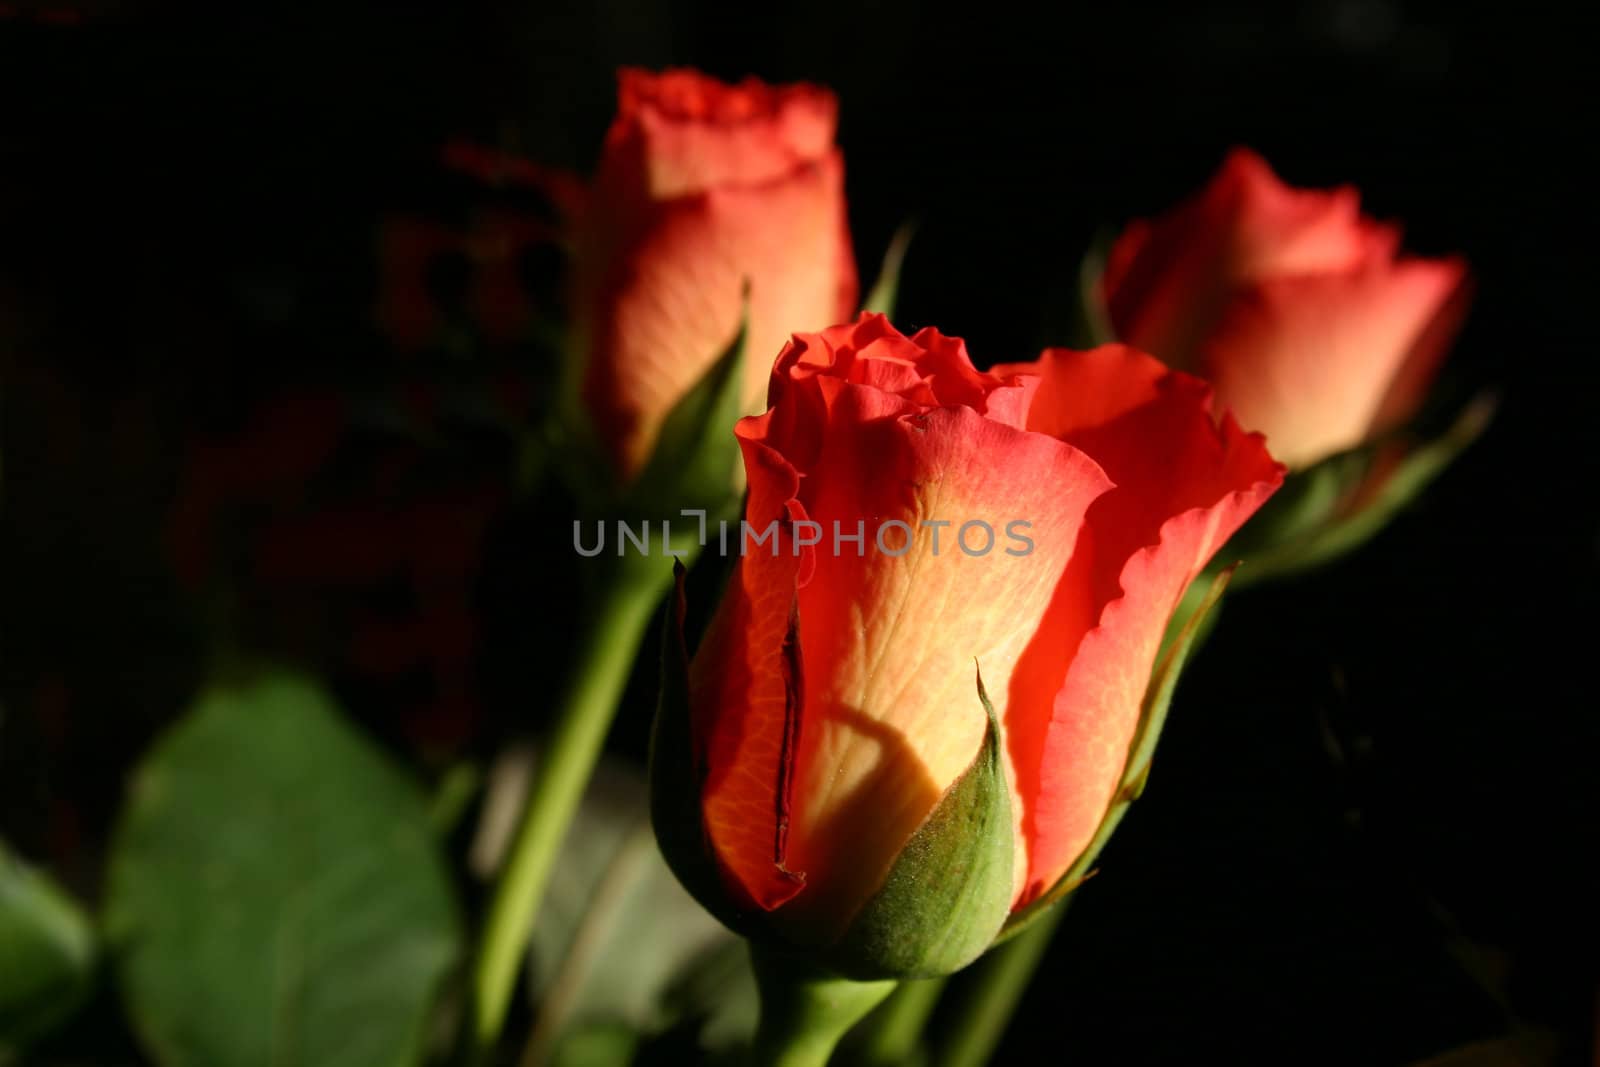 rosebuds over a dark background